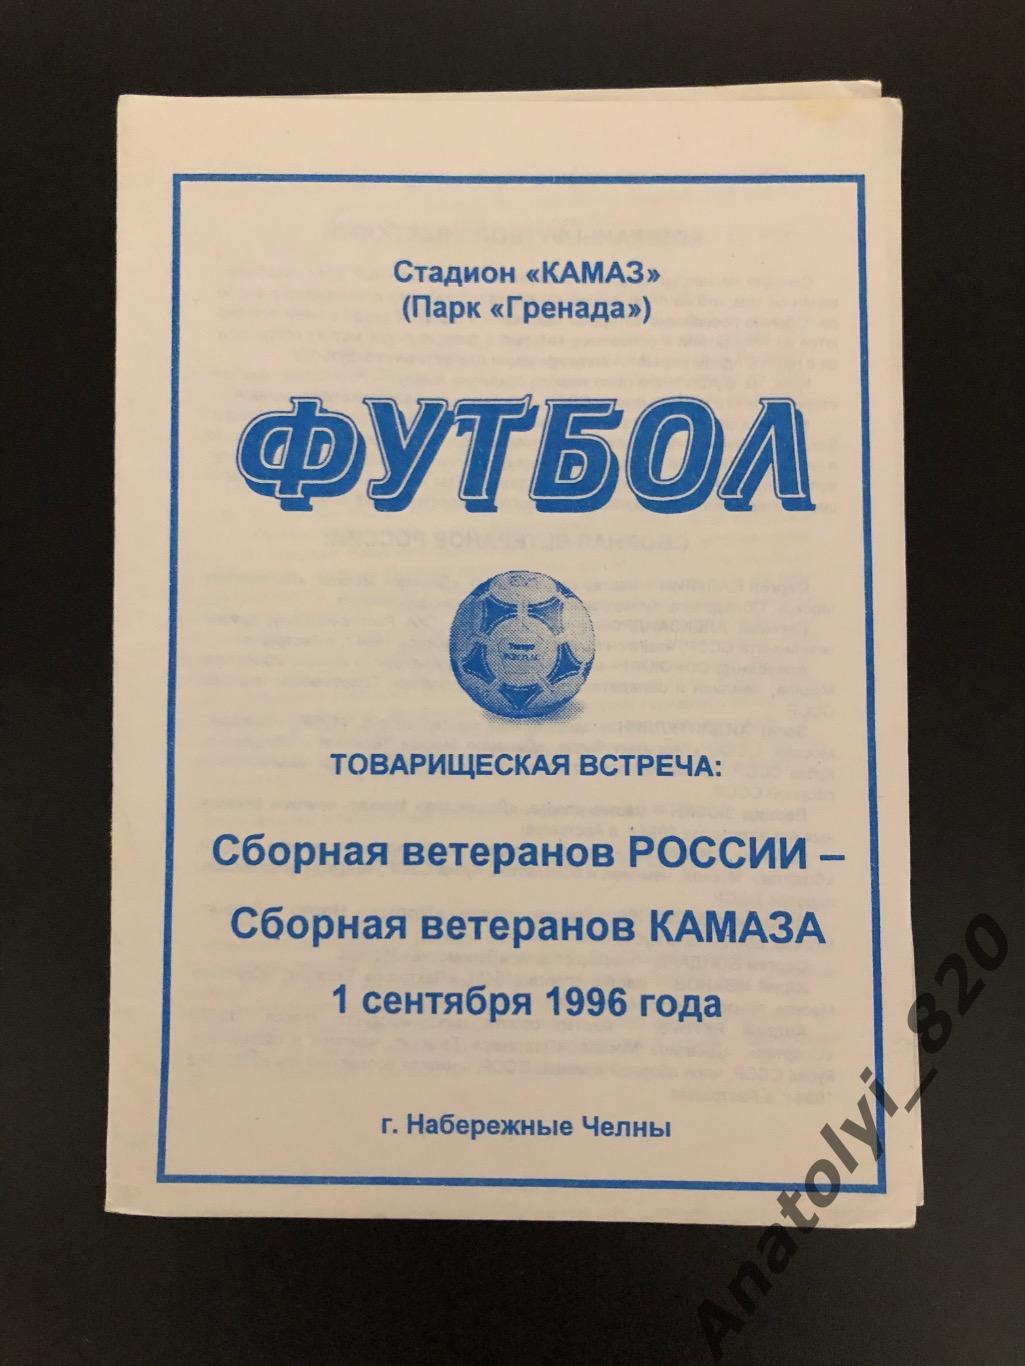 Сборная ветеранов России - сборная ветеранов Камаза, 01.09.1996